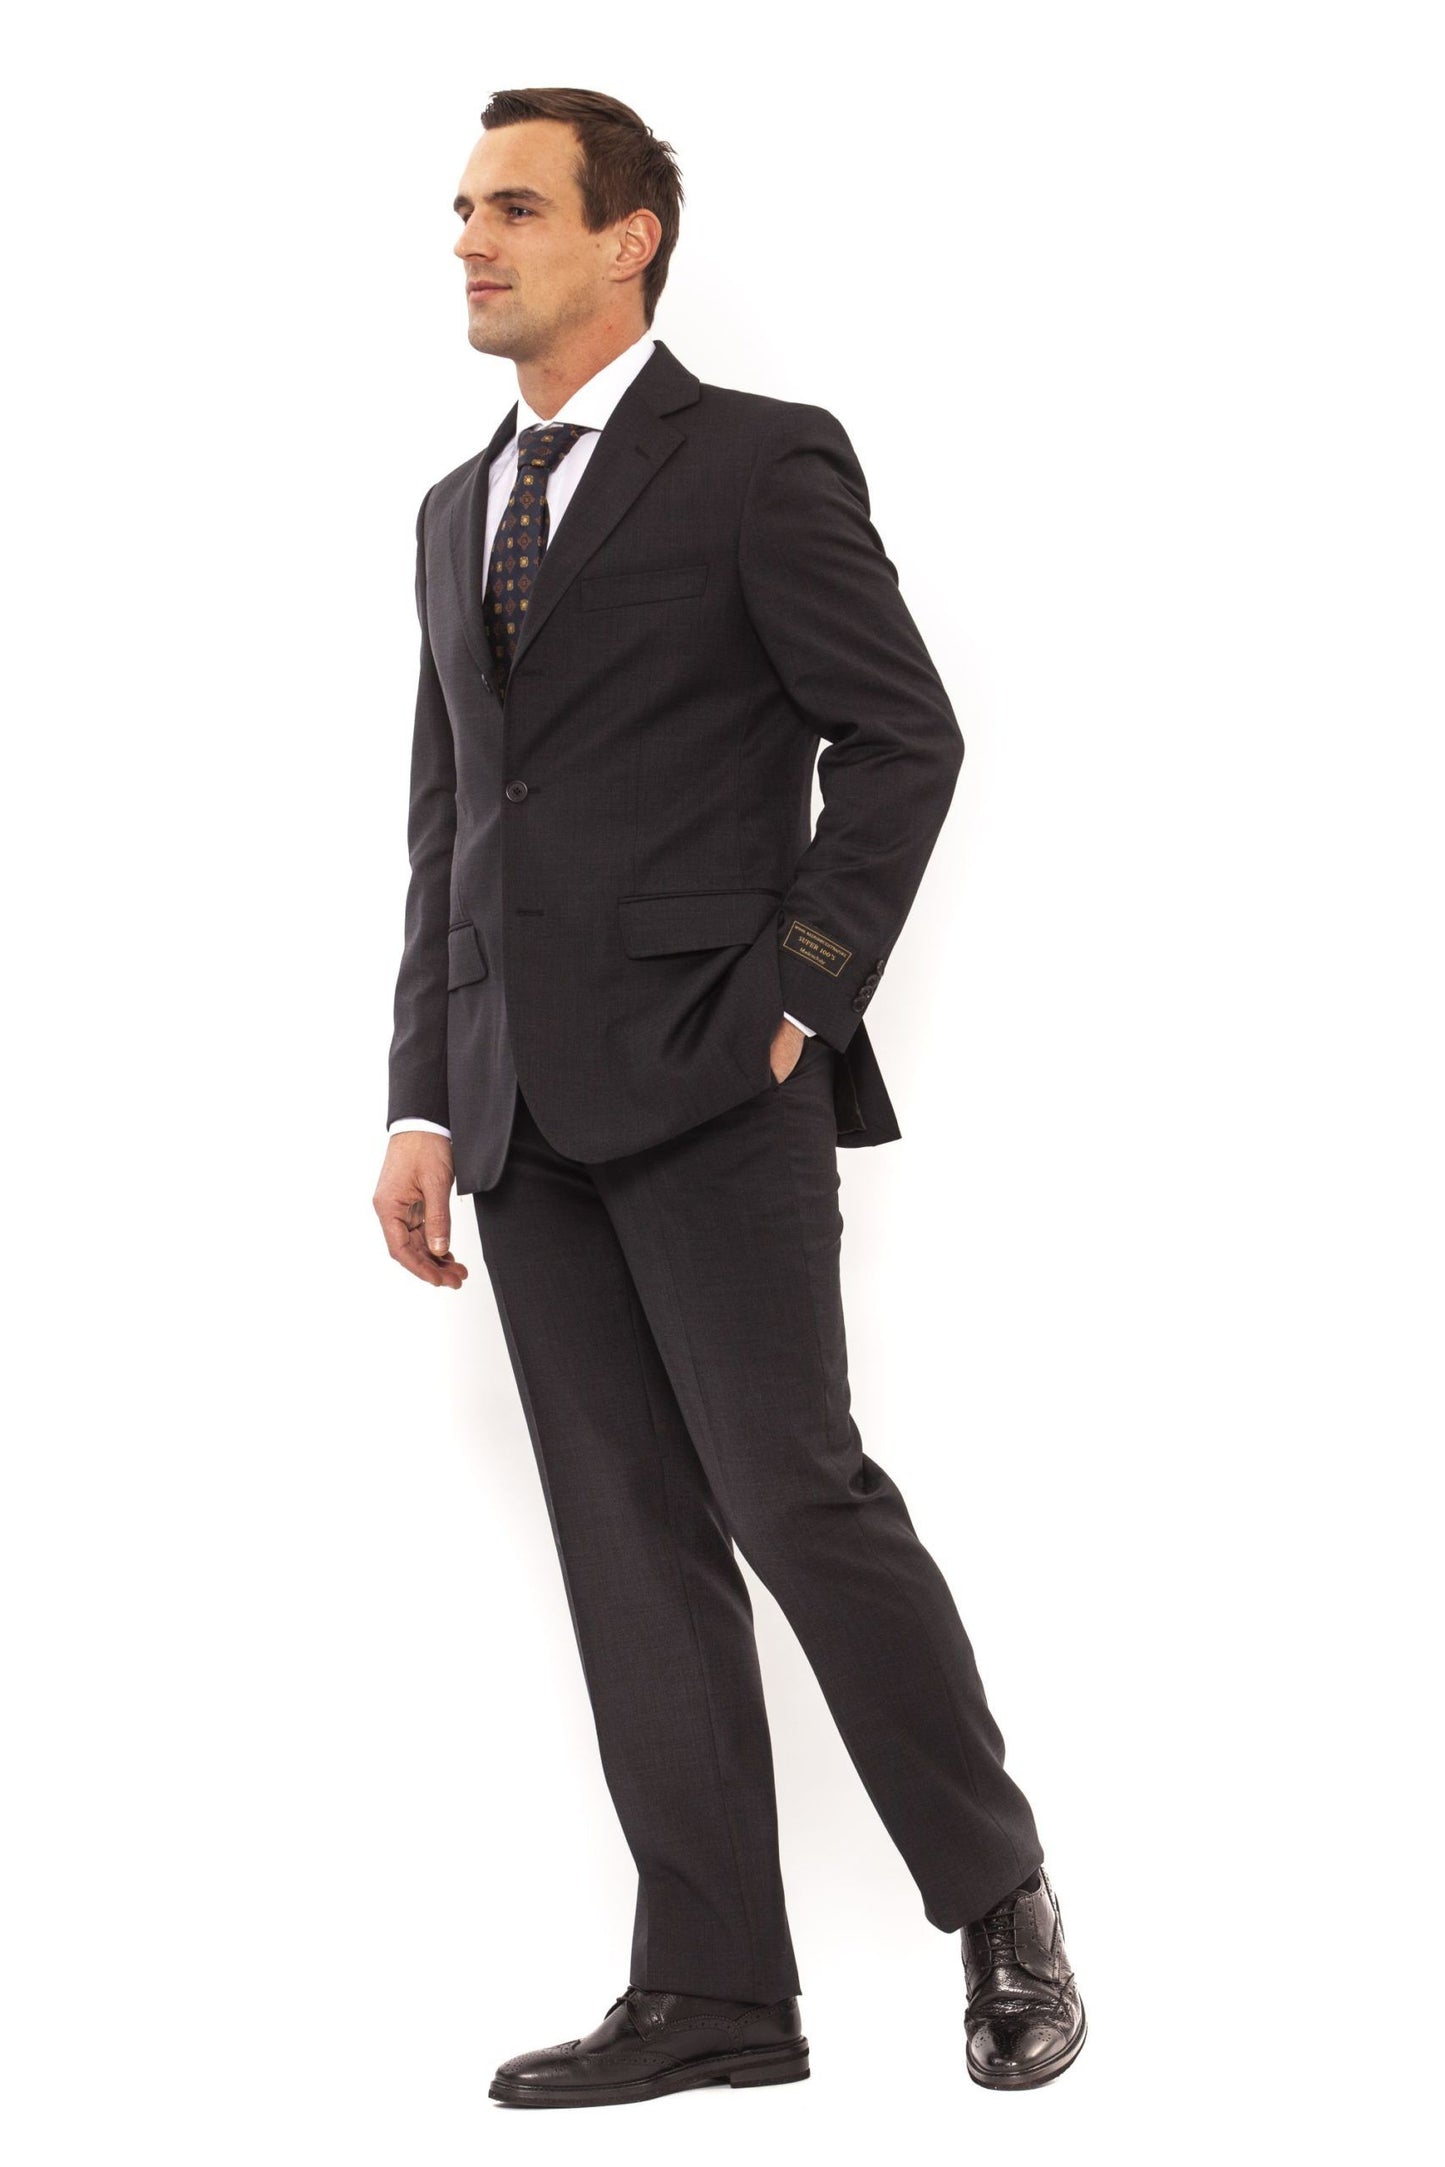 Elegant Classic Fit Gray Suit